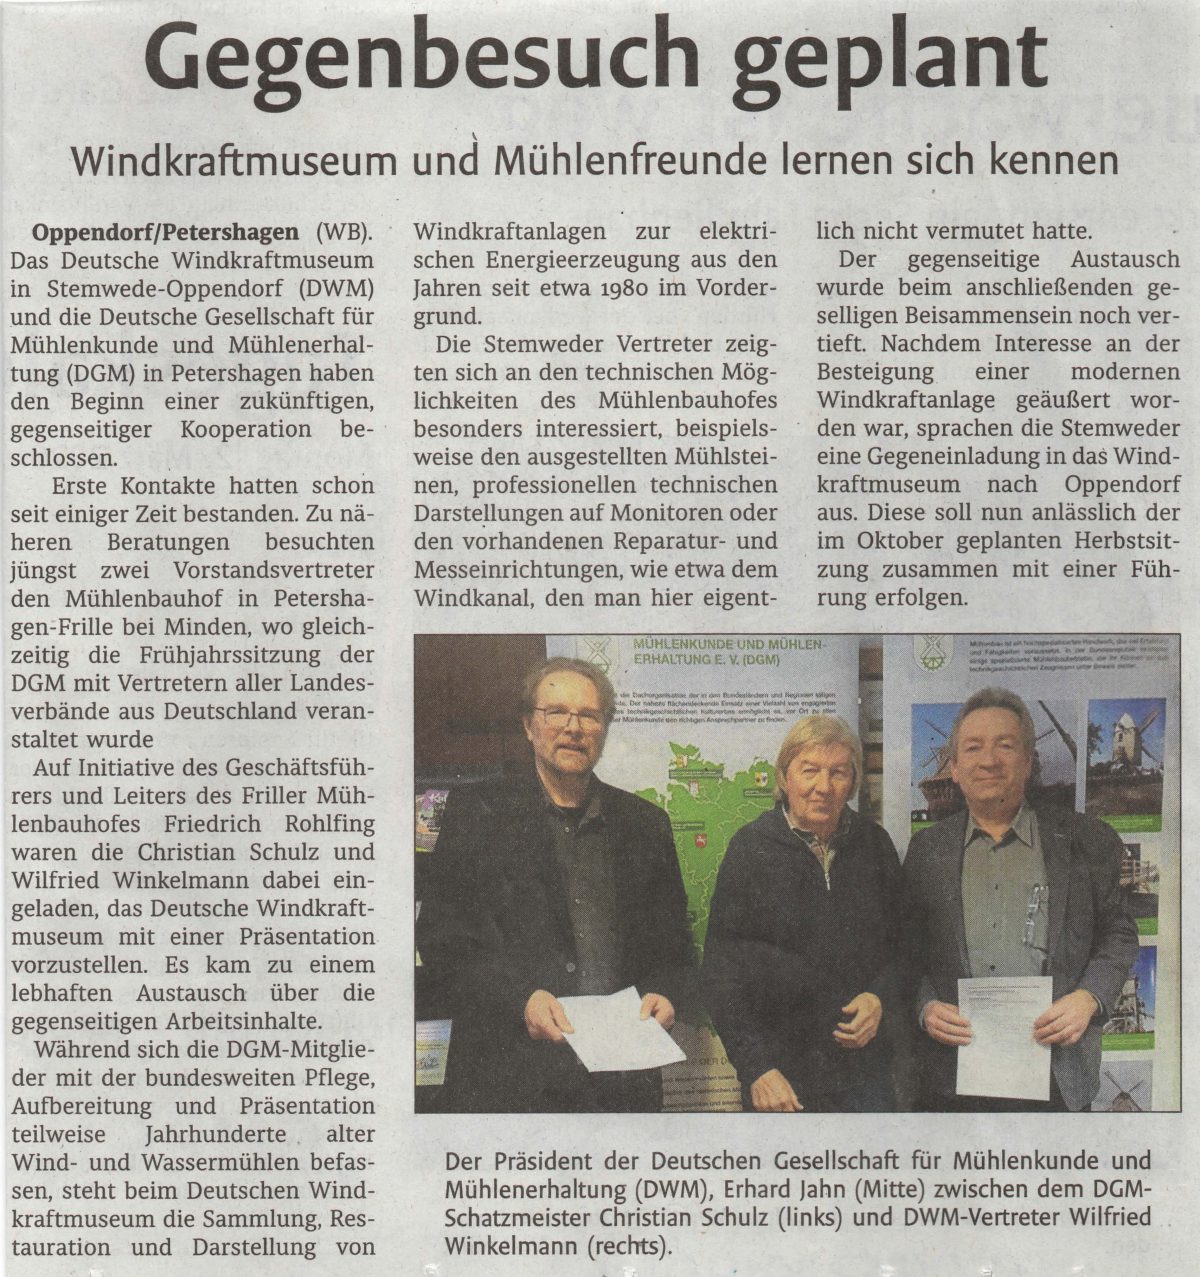 DWM & DGM: Westfalen Blatt reports